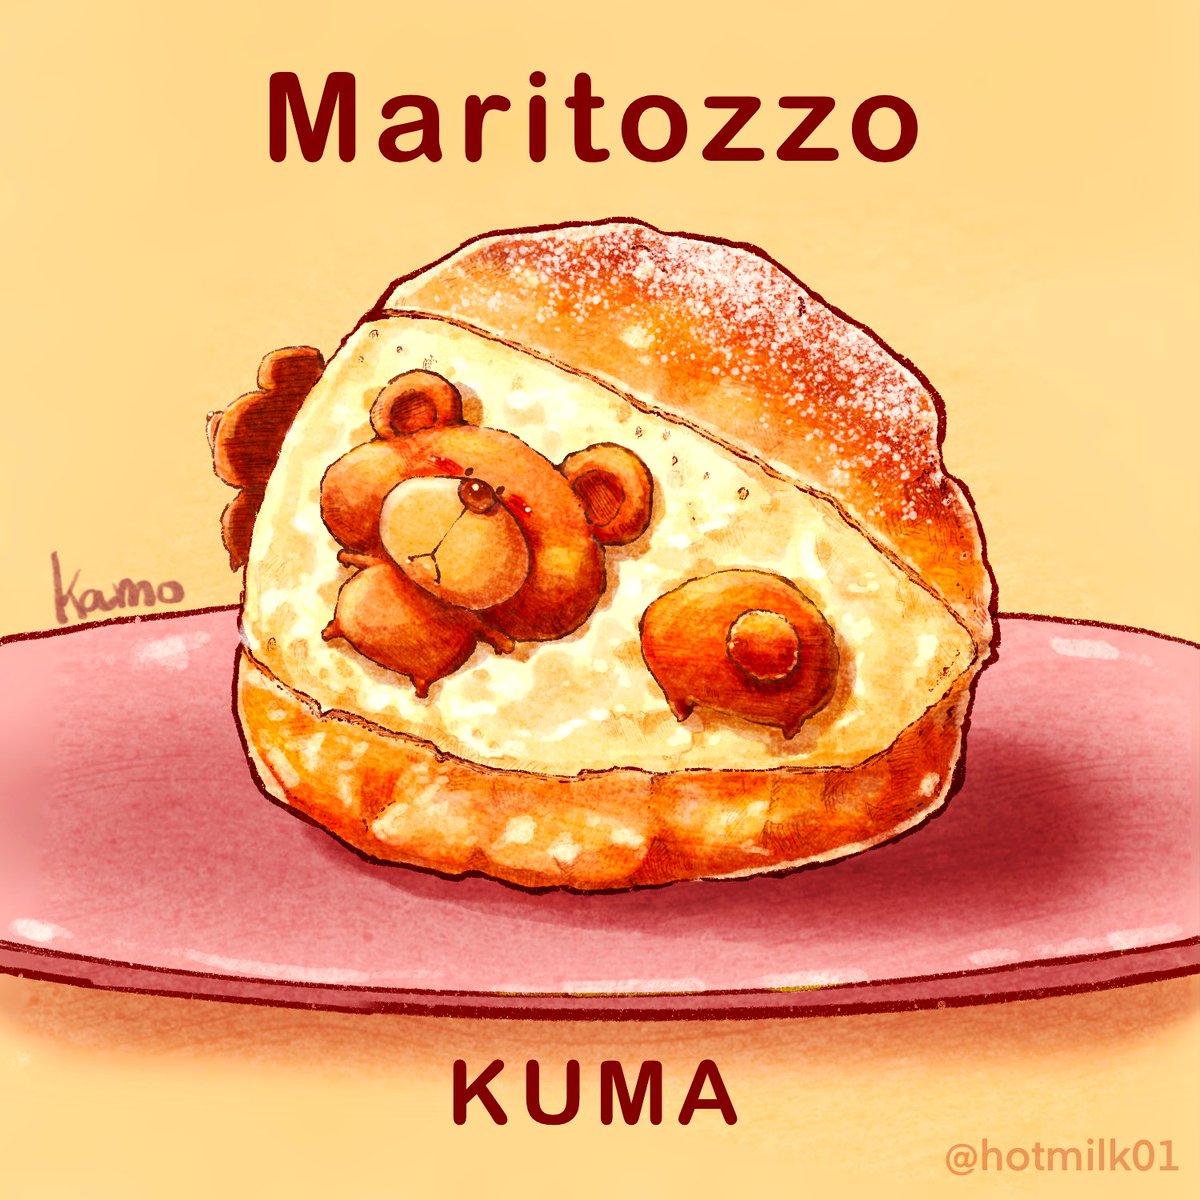 マリトッツォ Kuma マリトッツォ 食べ物イラスト Kamo 食べ物 動物ｲﾗｽﾄ のイラスト